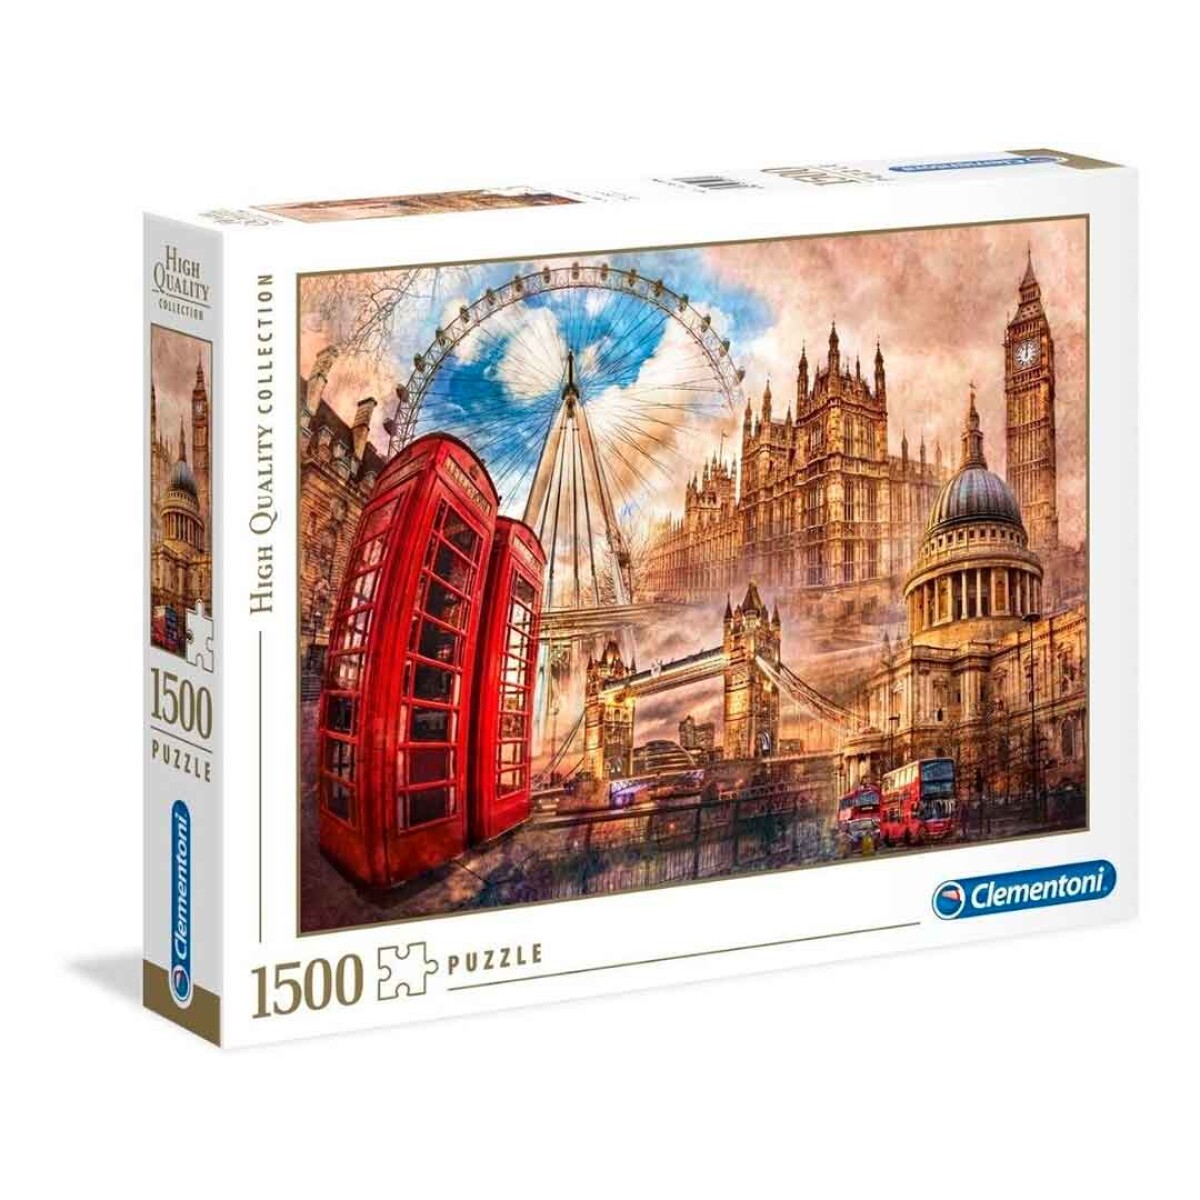 Puzzle Clementoni 1500 piezas Londres High Quality - 001 